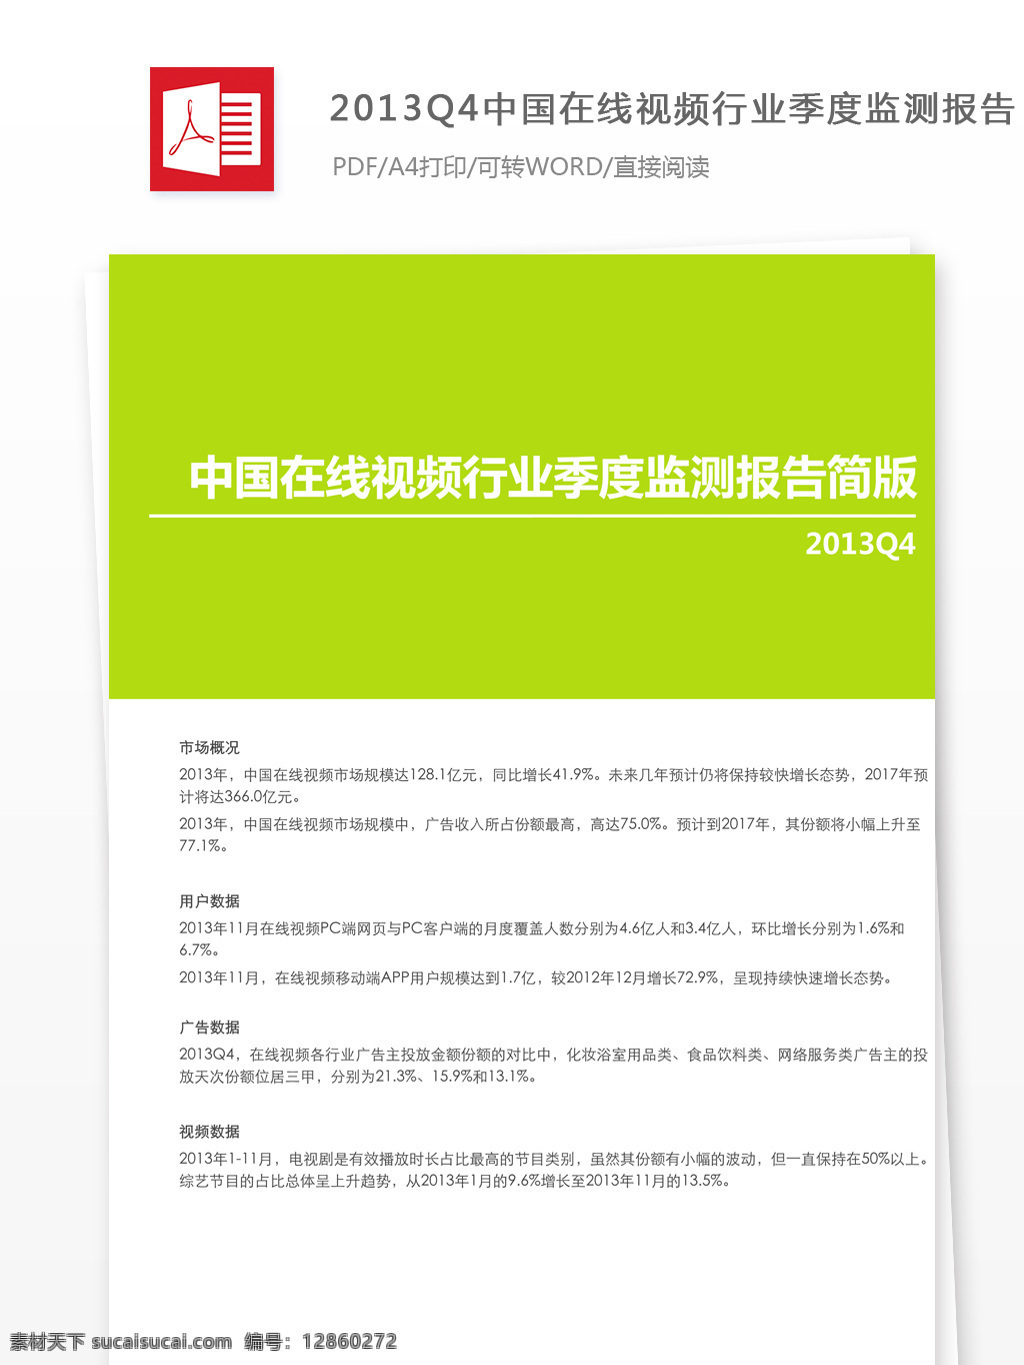 中国 在线视频 行业 季度 监测 报告 结束语 在线视频行业 季度监测报告 视频